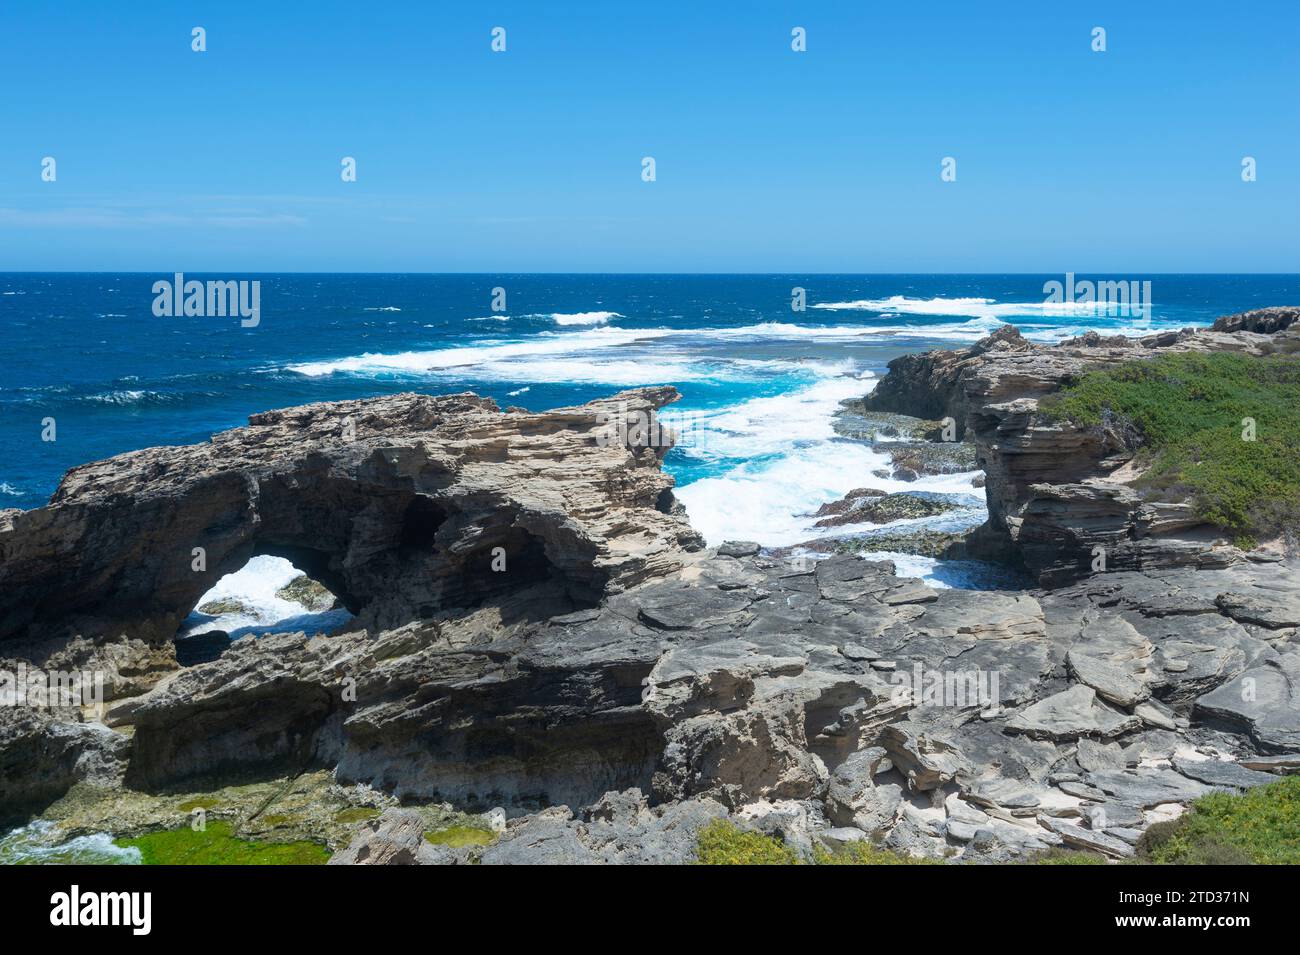 Vista panorámica de Cabo Vlamingh y su escarpada costa, Océano Índico, Isla Rottnest o Wadjemup, Australia Occidental, Australia Foto de stock